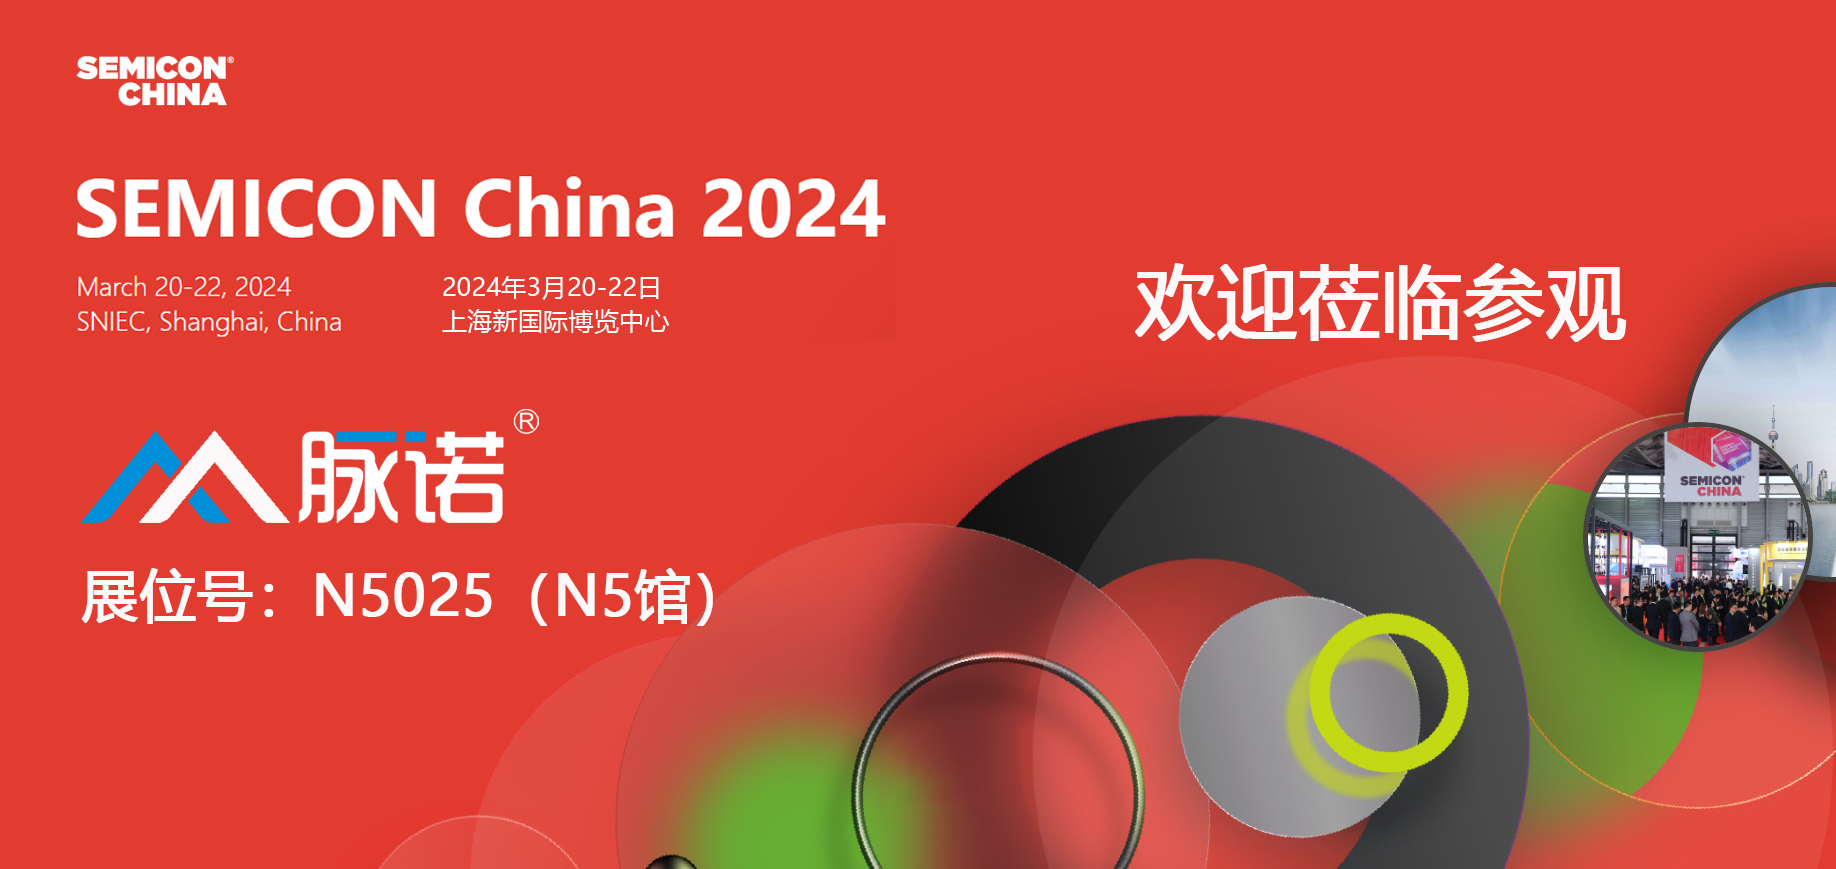 上海脉诺将参加SEMICON CHINA 2024展会（N5025）